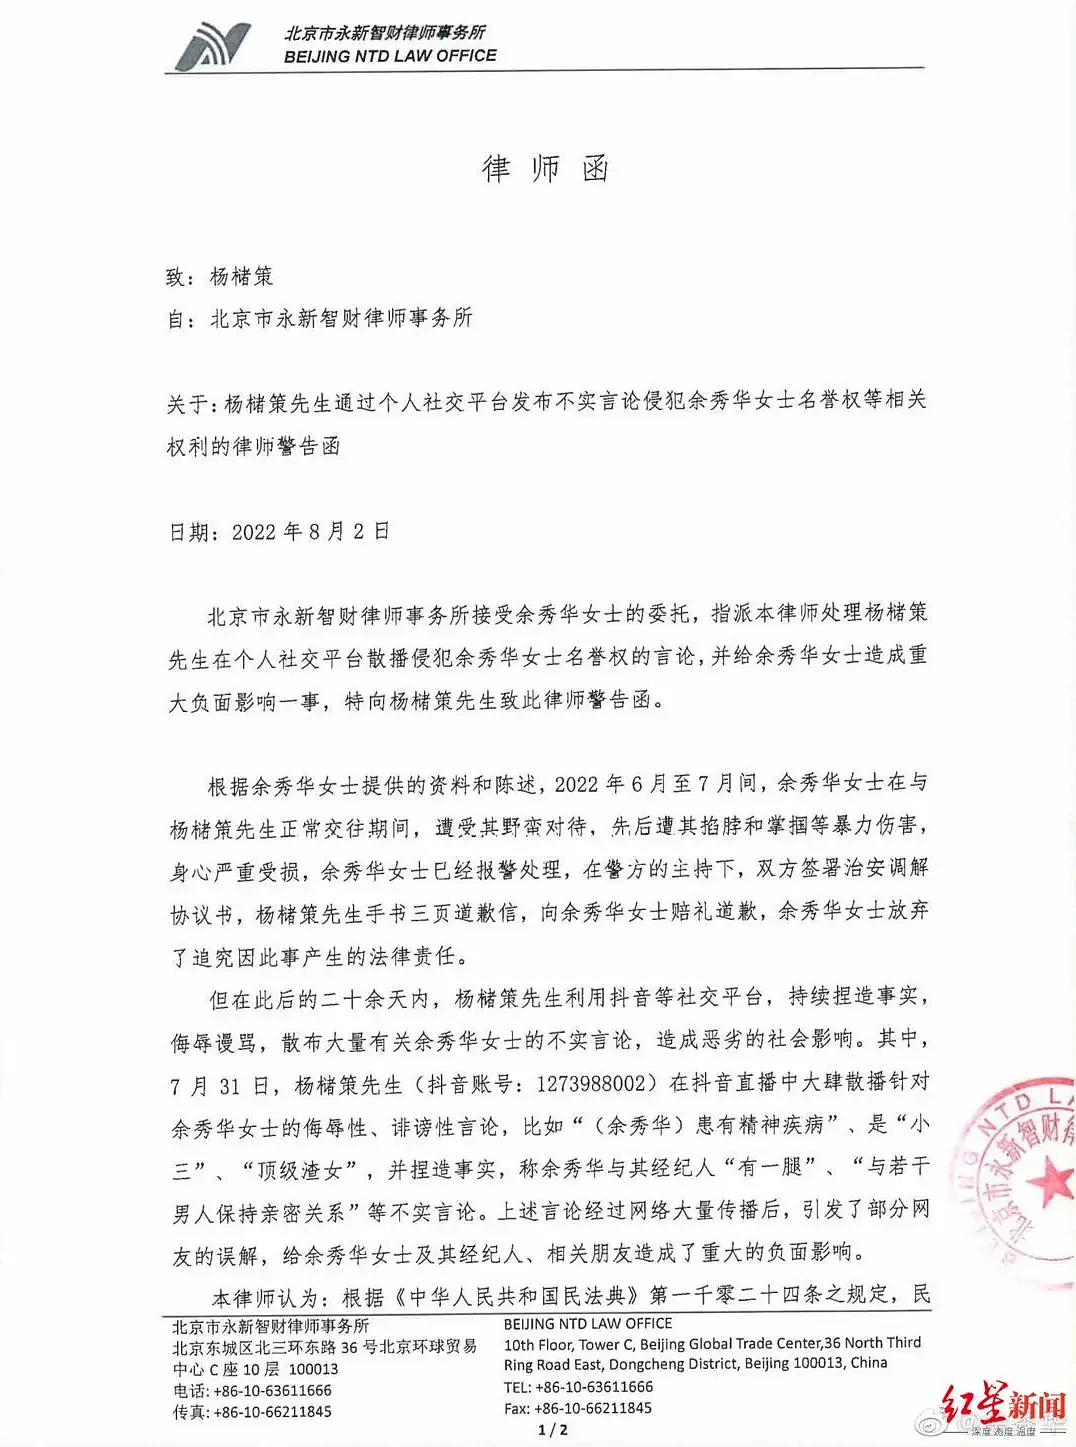 ▲余秀华对杨槠策发出的律师函